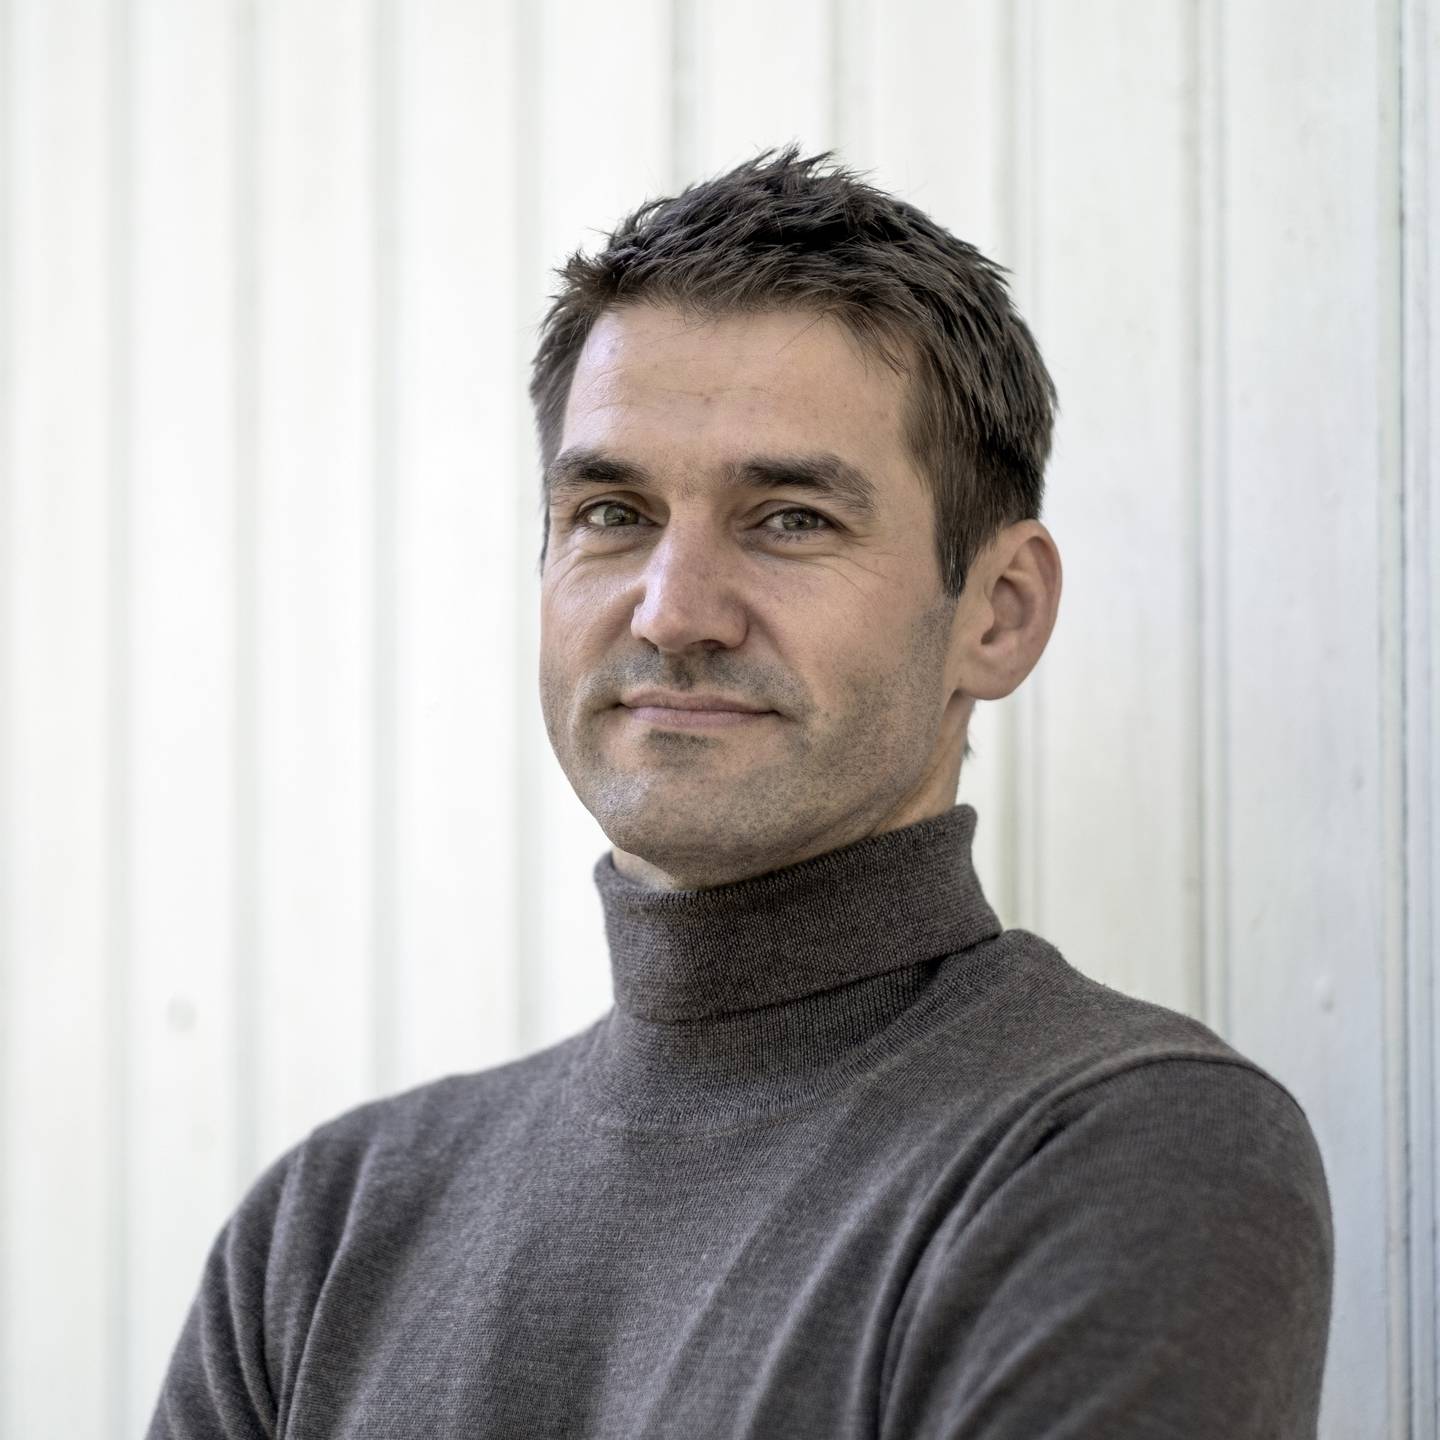 Forfatter Sigmund Løvåsen er prosjektleder for Samlaget og Minotenks nye studietilbud.